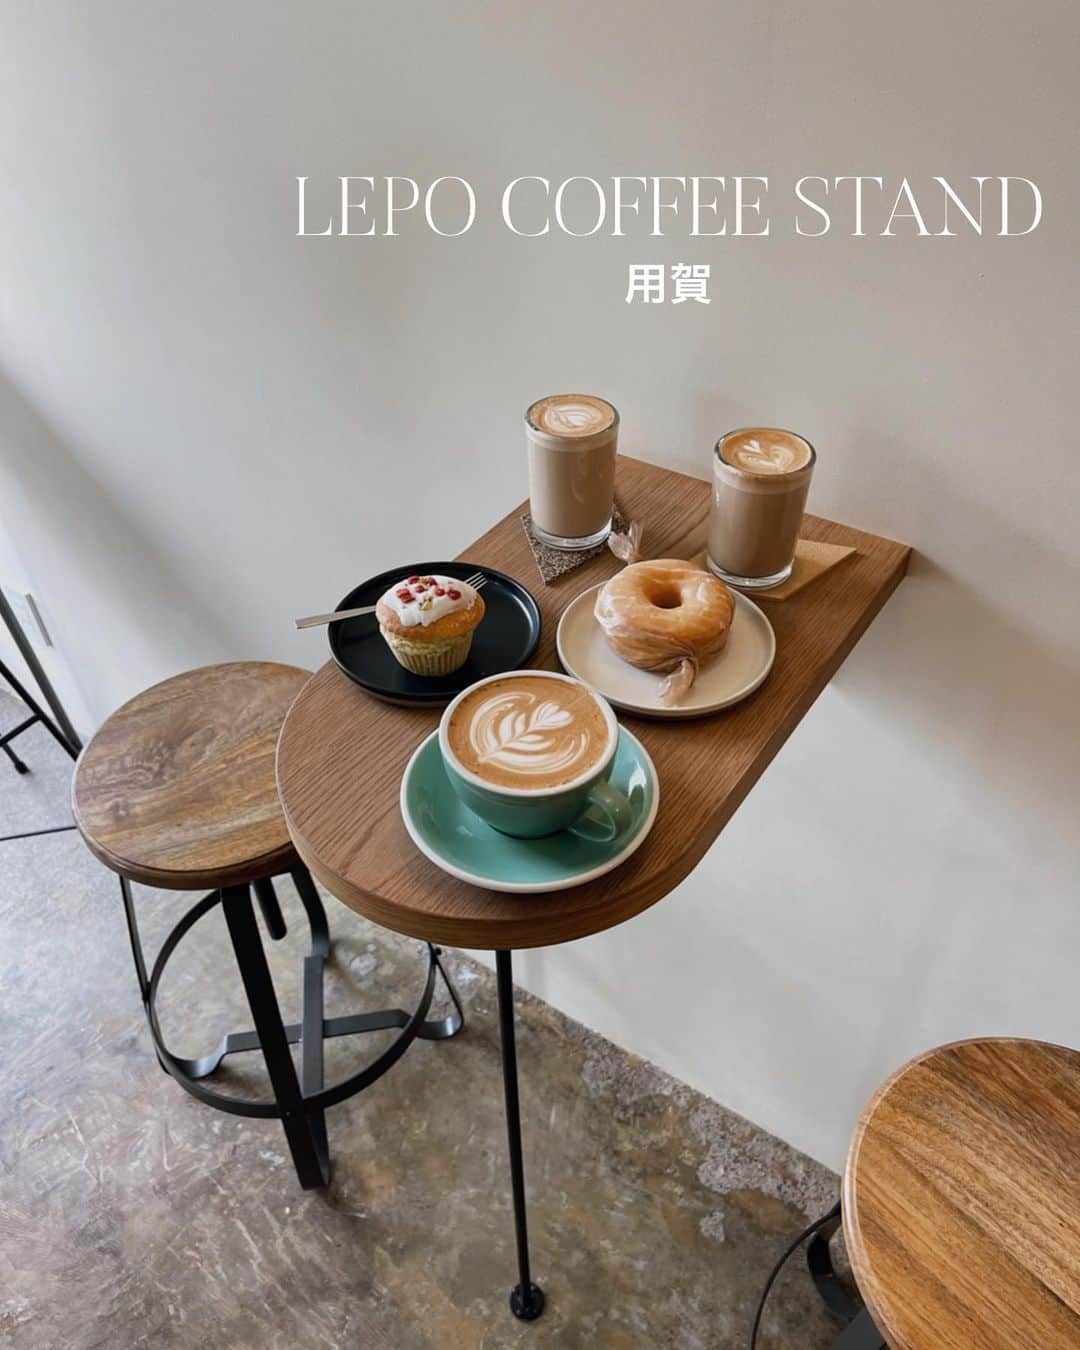 C A F E L O V E Rのインスタグラム：「LEPO COFFEE STAND // 用賀 こだわりコーヒーと焼き菓子を頂ける シンプルで北欧テイストなかわいいカフェ☕️ 優しい光の差し込む居心地のいい空間で カフェタイムでほっこりひと休み🍃  おひとりさまにもわんこ連れにもおすすめ🐶 アットホームな雰囲気でご近所さんにも人気だそう🧁 またゆっくりお邪魔したいです☕️ ㅤ  ------------------------------------- ◼︎オーダー CAFE LATTE ¥600 HONEY GINGER LATTE(期間限定) ¥650 MUFFIN ¥480 DOUGHNUT ¥350 ㅤ ◼︎広さ 11席。外にベンチ席。お一人様にもおすすめの落ち着く雰囲気🍃  ◼︎ペット🐶○  ◼︎テイクアウト○ ㅤ ◼︎ カード、電子マネー○  ◼︎最寄駅 用賀駅から徒歩5分  ------------------------------------- @lepo_cofeestand #lepocoffeestand #レポコーヒースタンド ㅤ ※営業状況やメニューなど詳細は、 各アカウントでご確認ください」